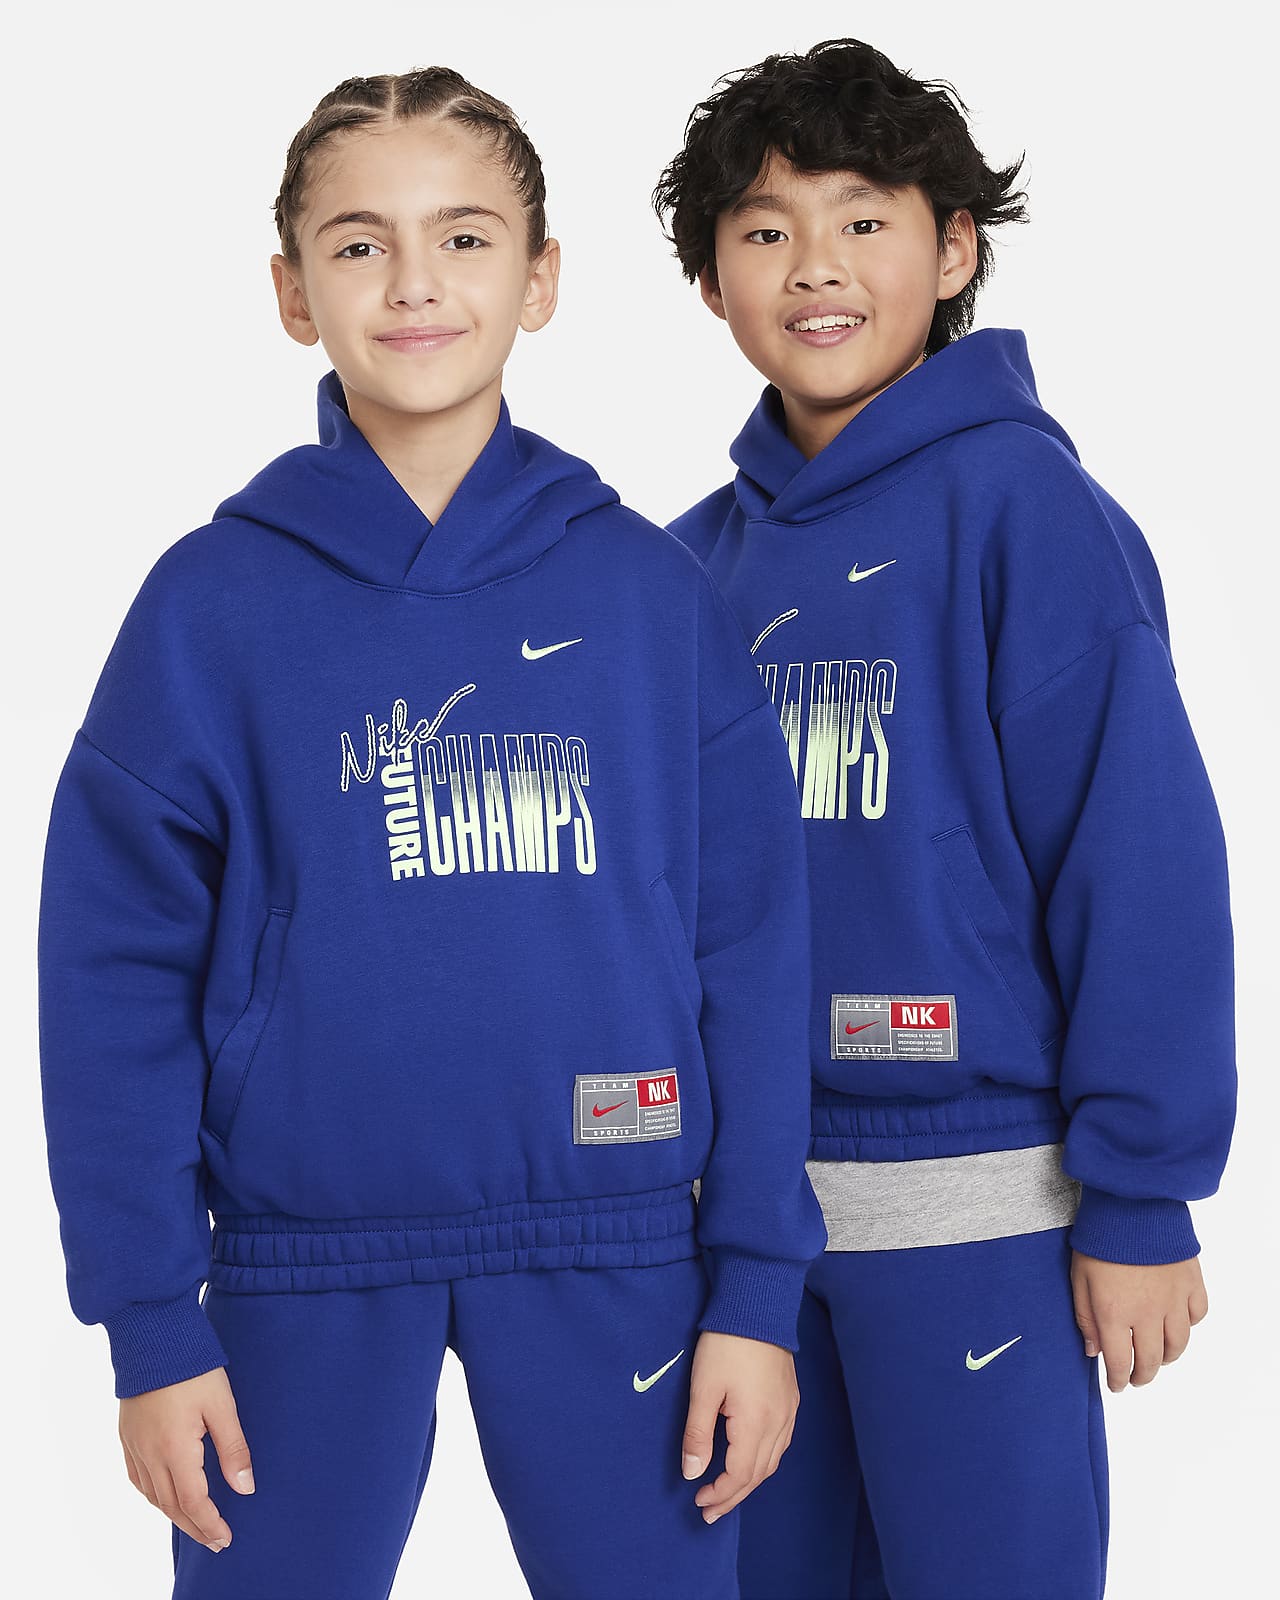 Φλις φούτερ με κουκούλα Nike Culture of Basketball για μεγάλα παιδιά